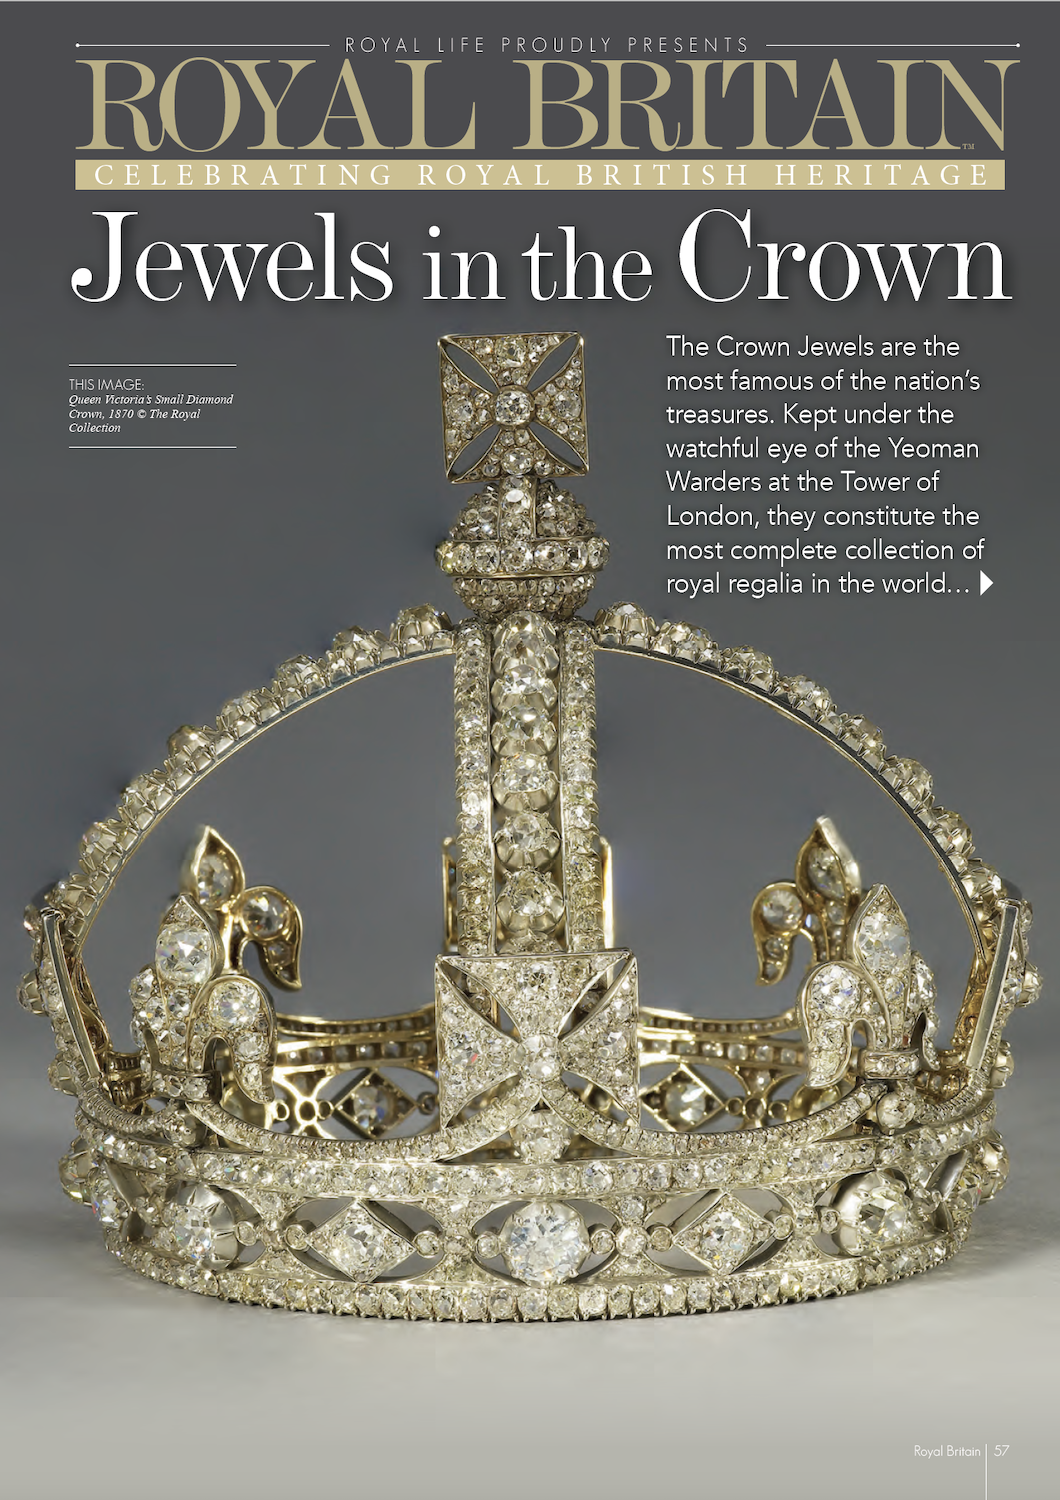 Royal Life Magazine - Issue 60